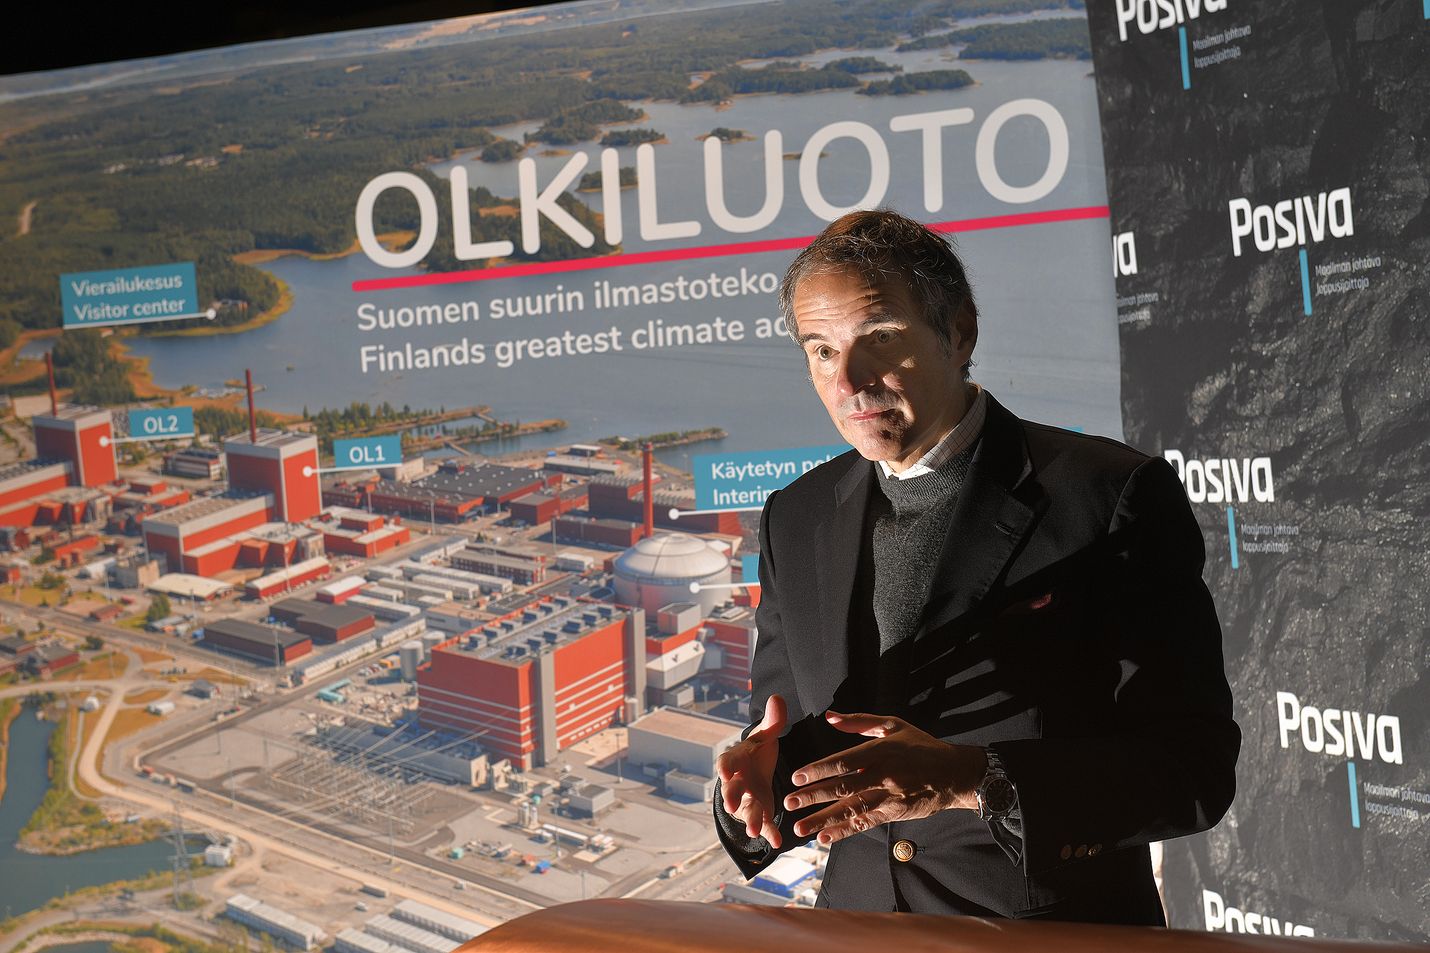 Ydinenergiajärjestö IAEA:n pääjohtaja Rafael Grossi puhua Onkalosta ”game changerinä”, voimakkaana suunnanmuutoksena. "Tämä on maailmanluokan referenssi, joka todistaa, että käytetyn ydinpolttoaineen loppusijoitus on mahdollista tehdä turvallisesti ja kestävällä tavalla", sanoi Grossi Länsi-Suomen haastattelussa Olkiluodossa marraskuussa 2020.